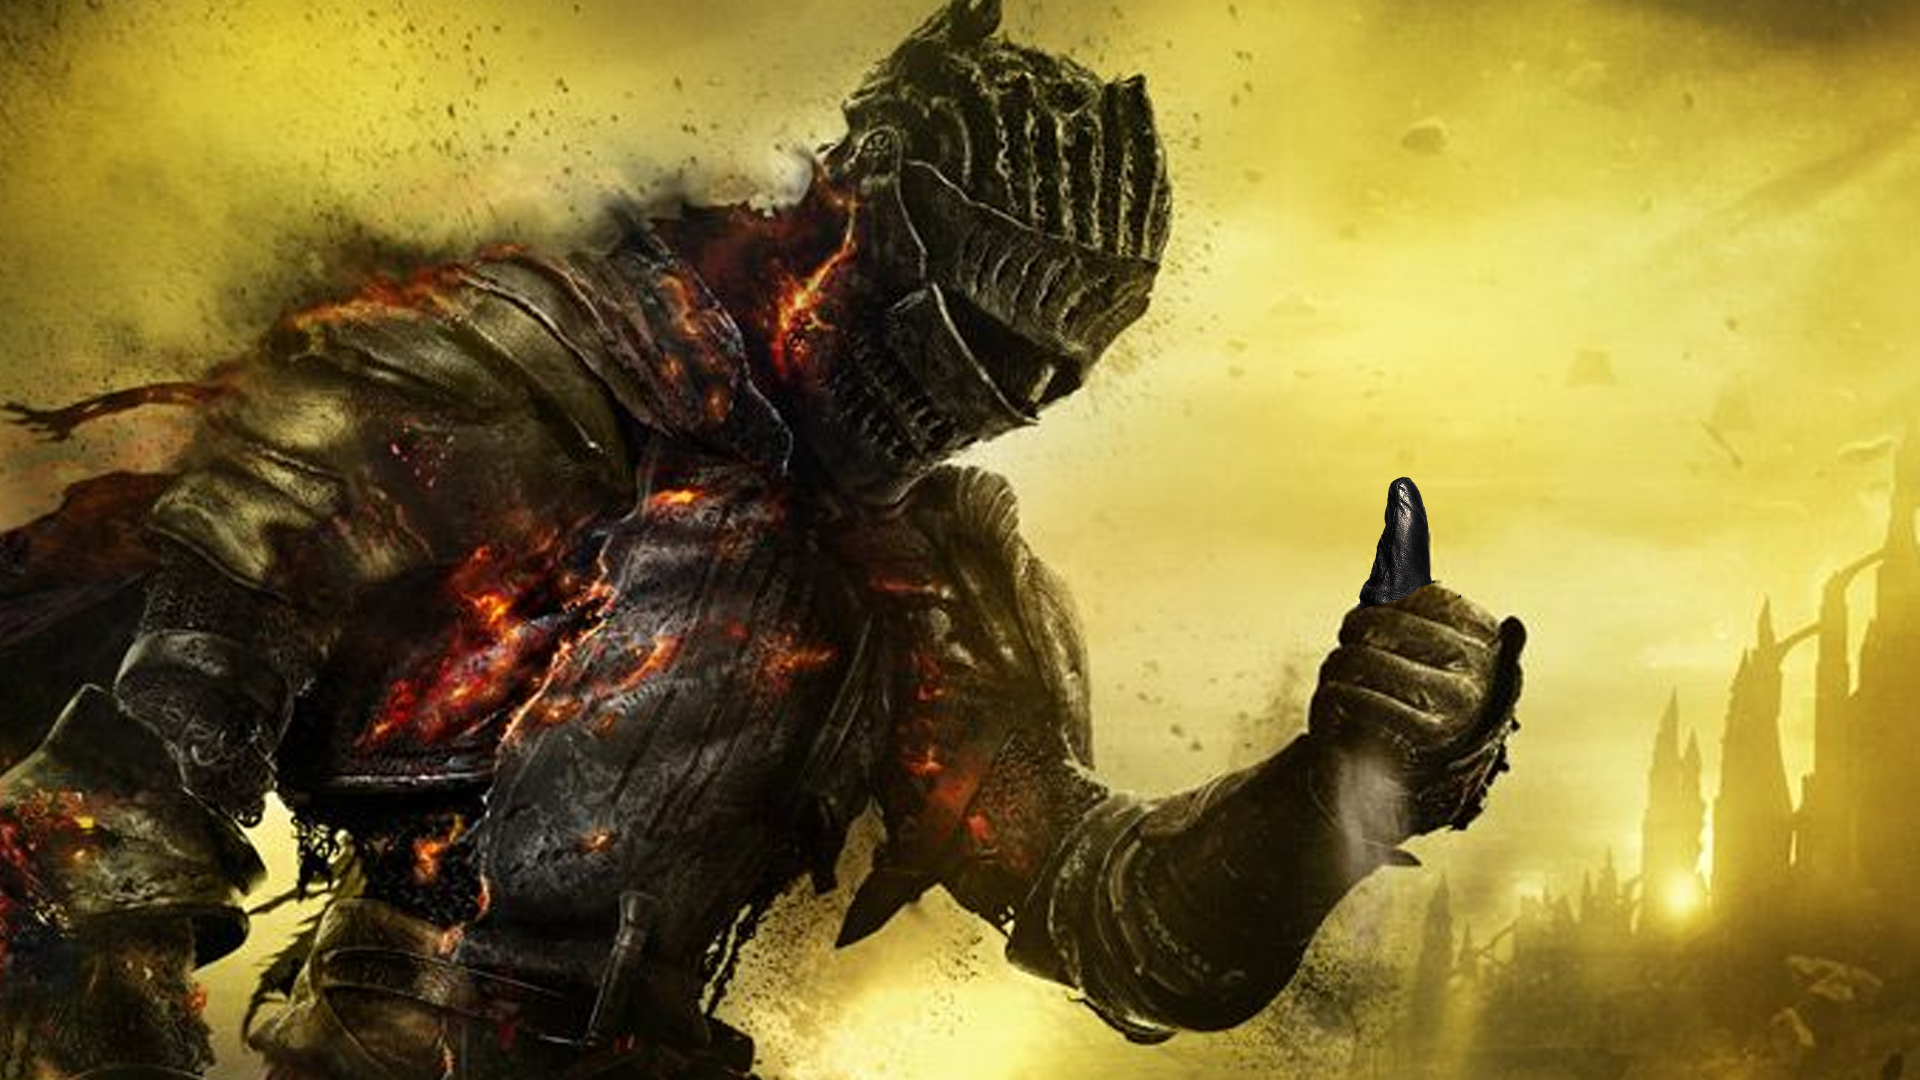 Dark Souls 3 multiplayer servers return hinted by Steam update